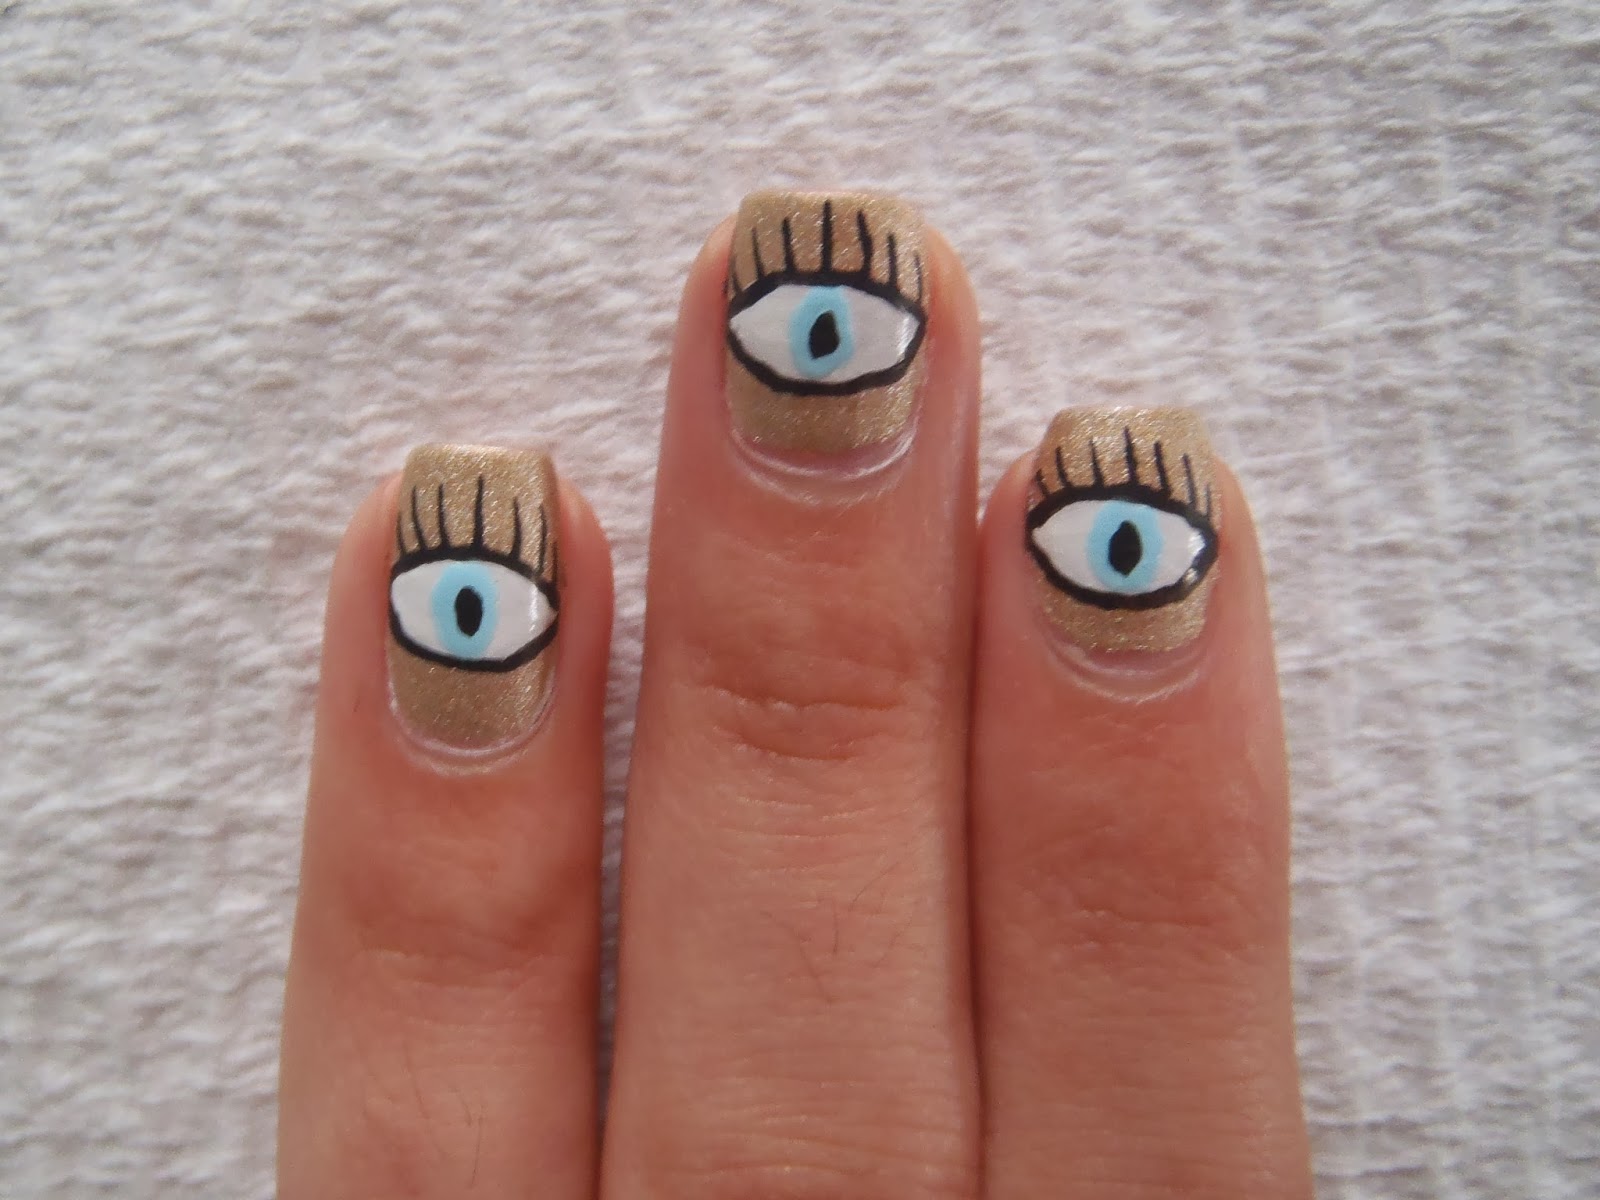 Gormay Nails: My nails are looking at you